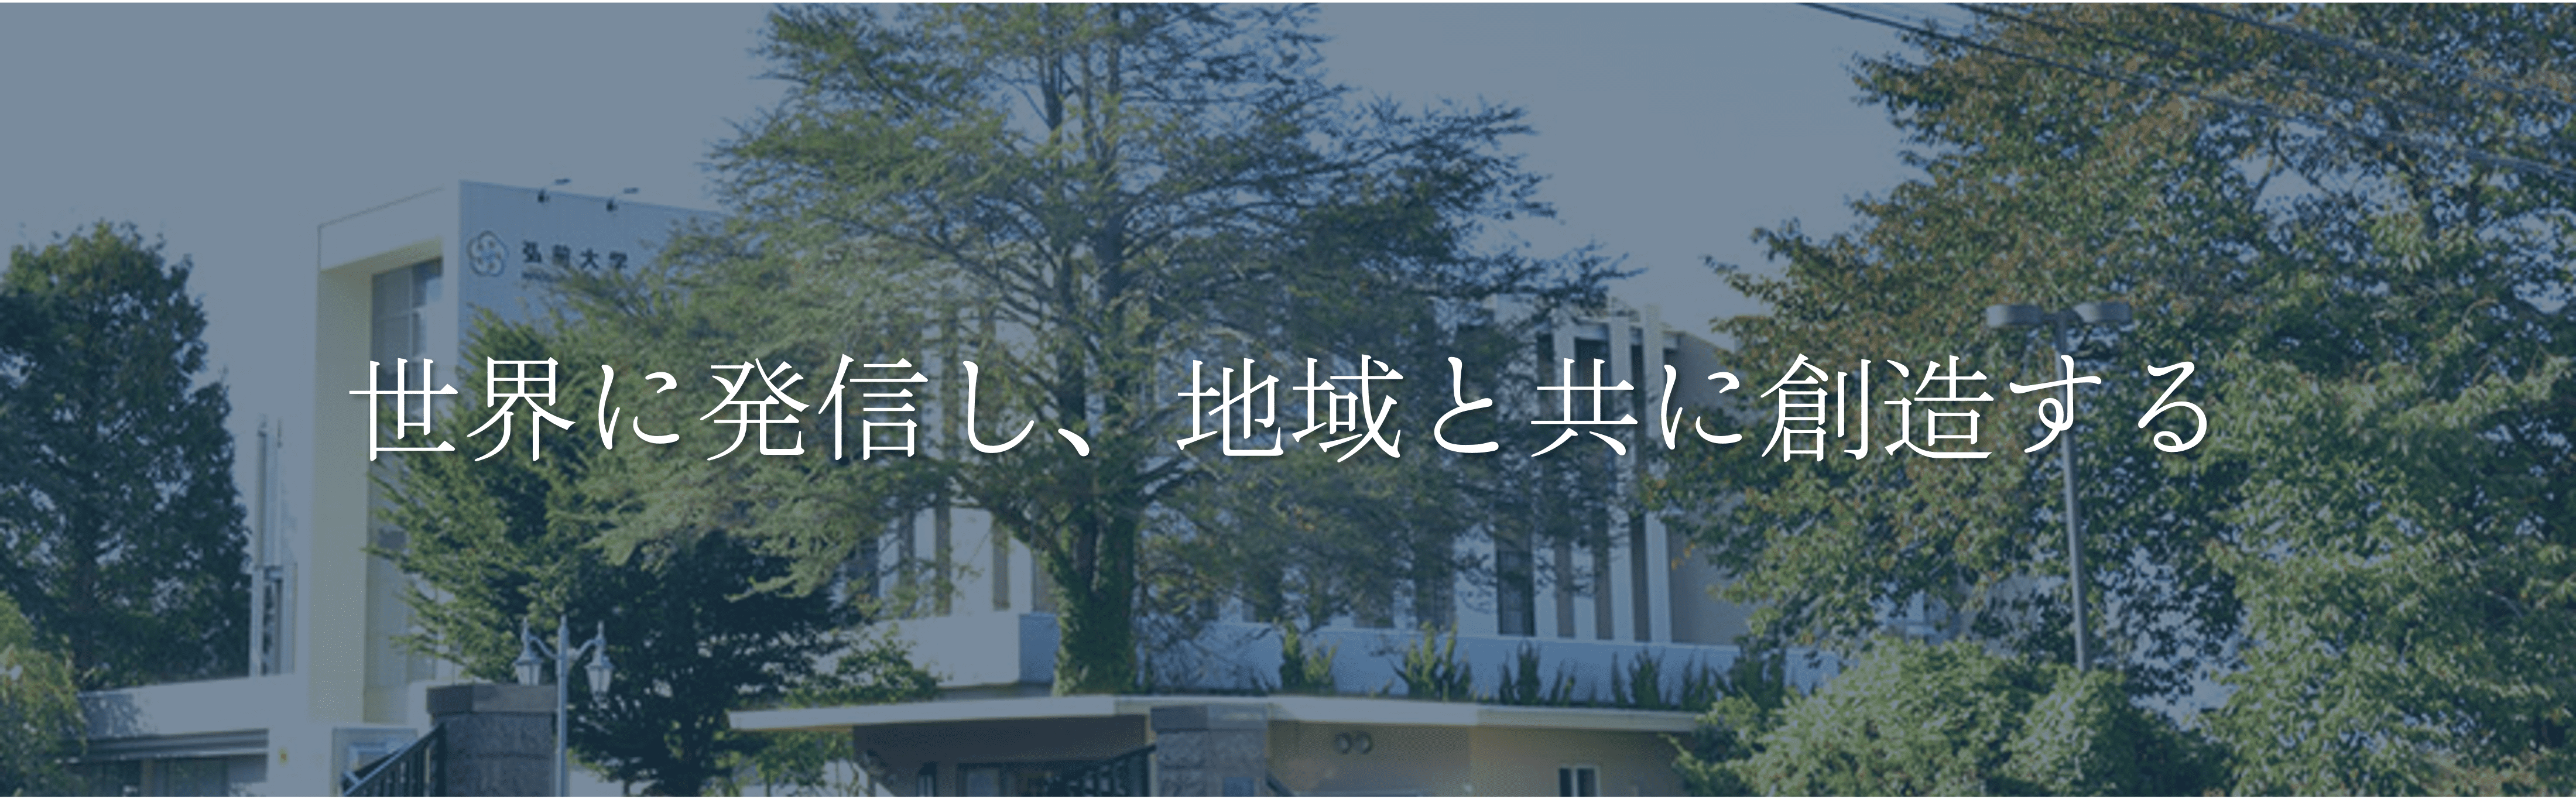 弘前大学のモットー